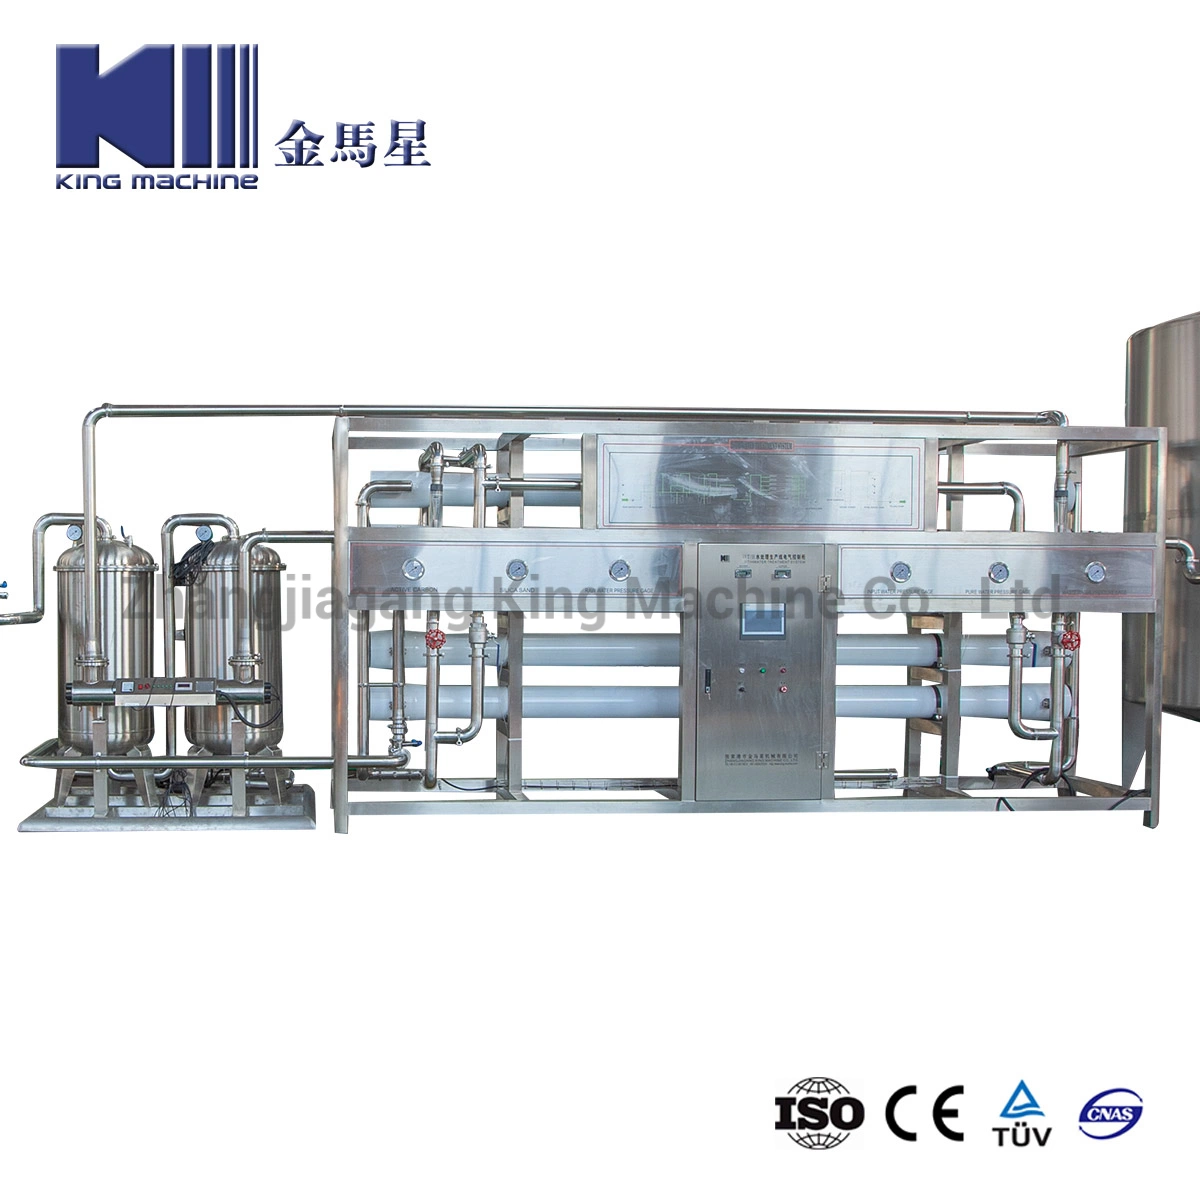 Zhangjiagang Système de purification de l'eau potable industrielle automatique à osmose inverse RO pour l'eau minérale pure Filtres à eau Traitement de l'eau Usine de purification